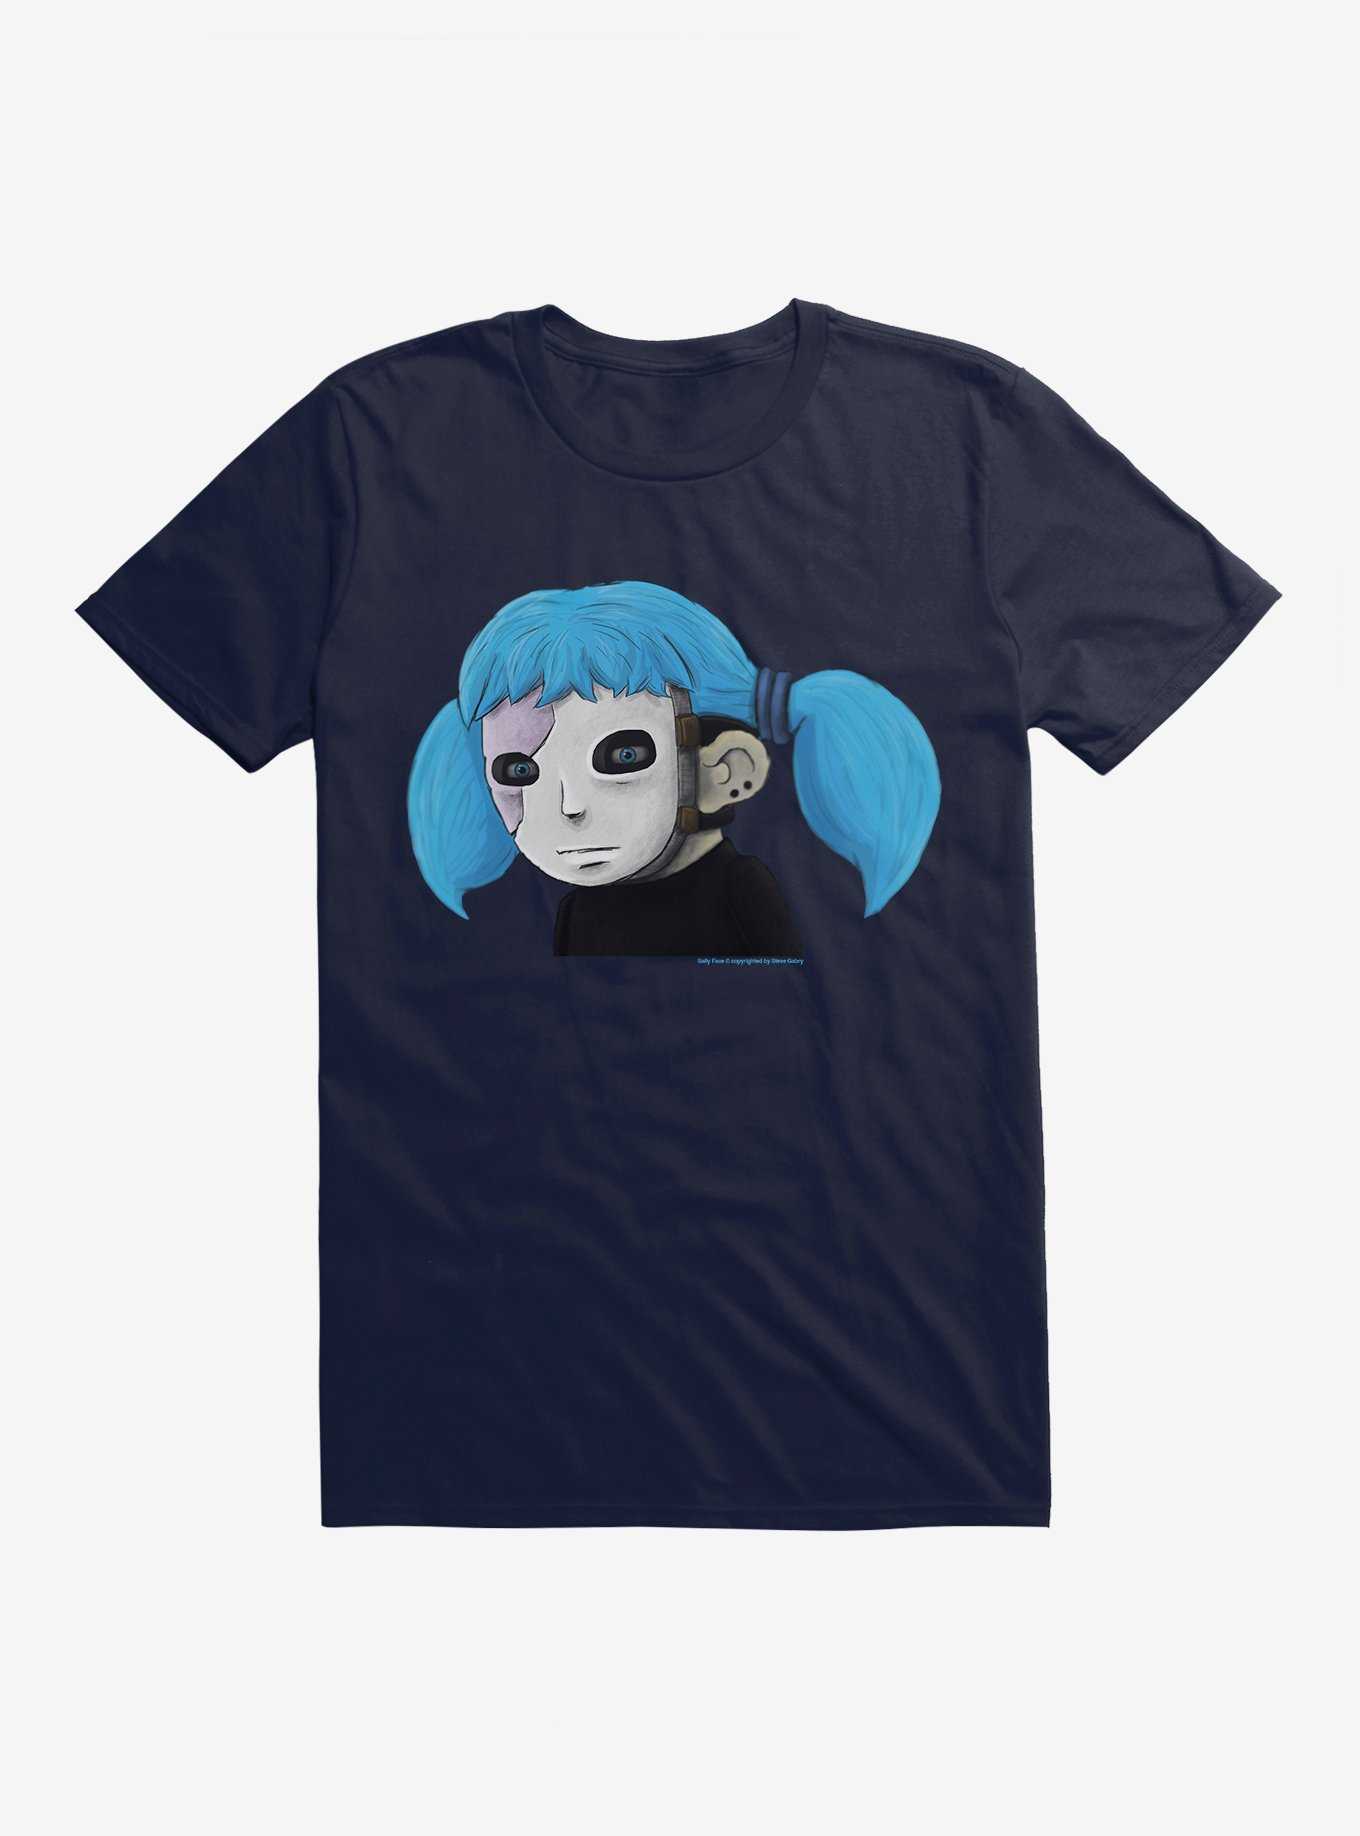 Sally Face Character T-Shirt, NAVY, hi-res